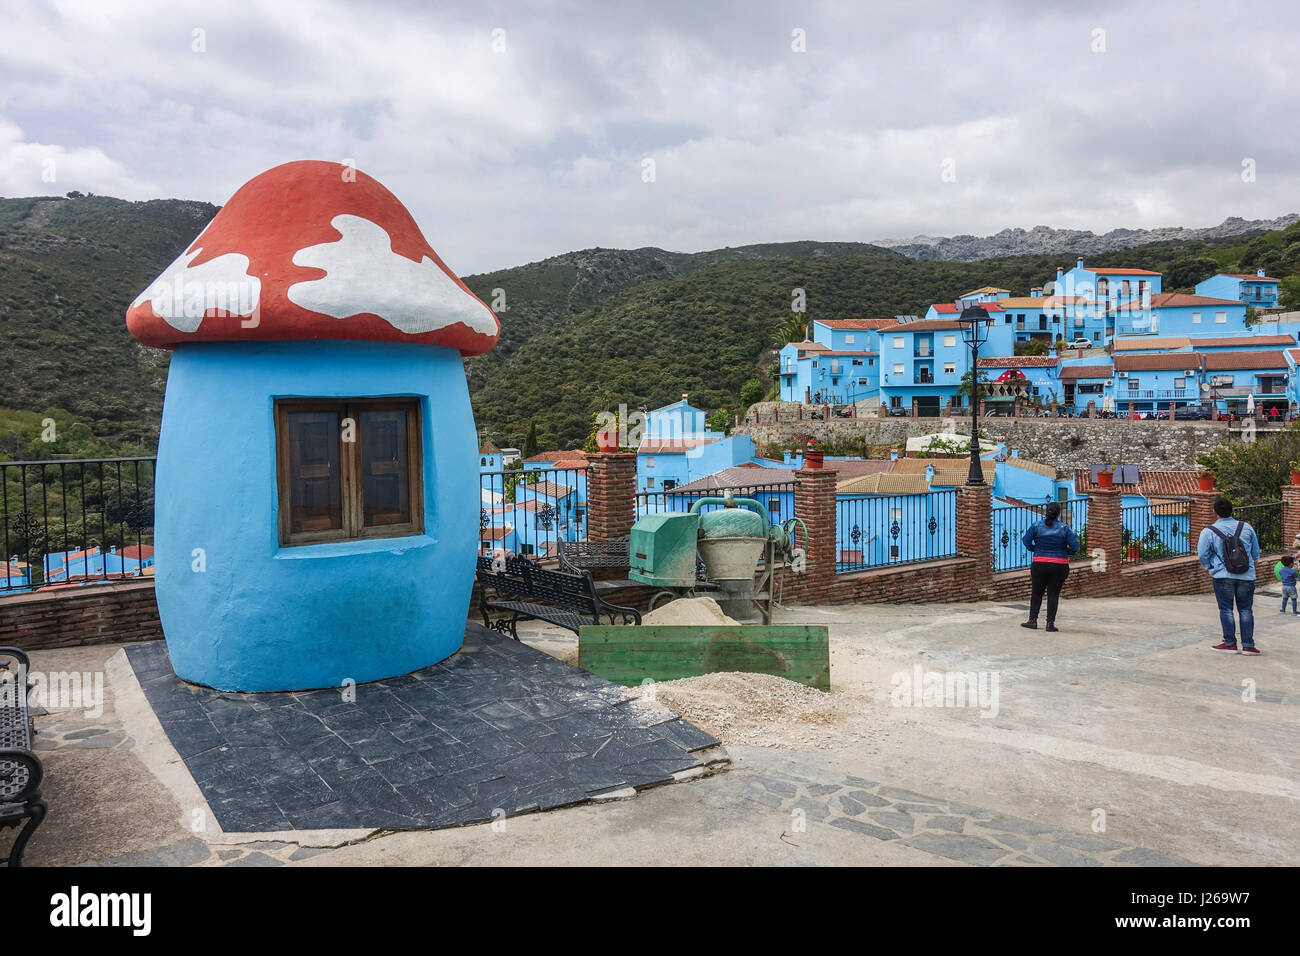 Juzcar Spanien. Smurf village Spanien, spanisches Dorf blau lackiert von Sony, werbebremsung Ihre neuen Schlumpf Film zu fördern, Andalusien, Spanien. Stockfoto